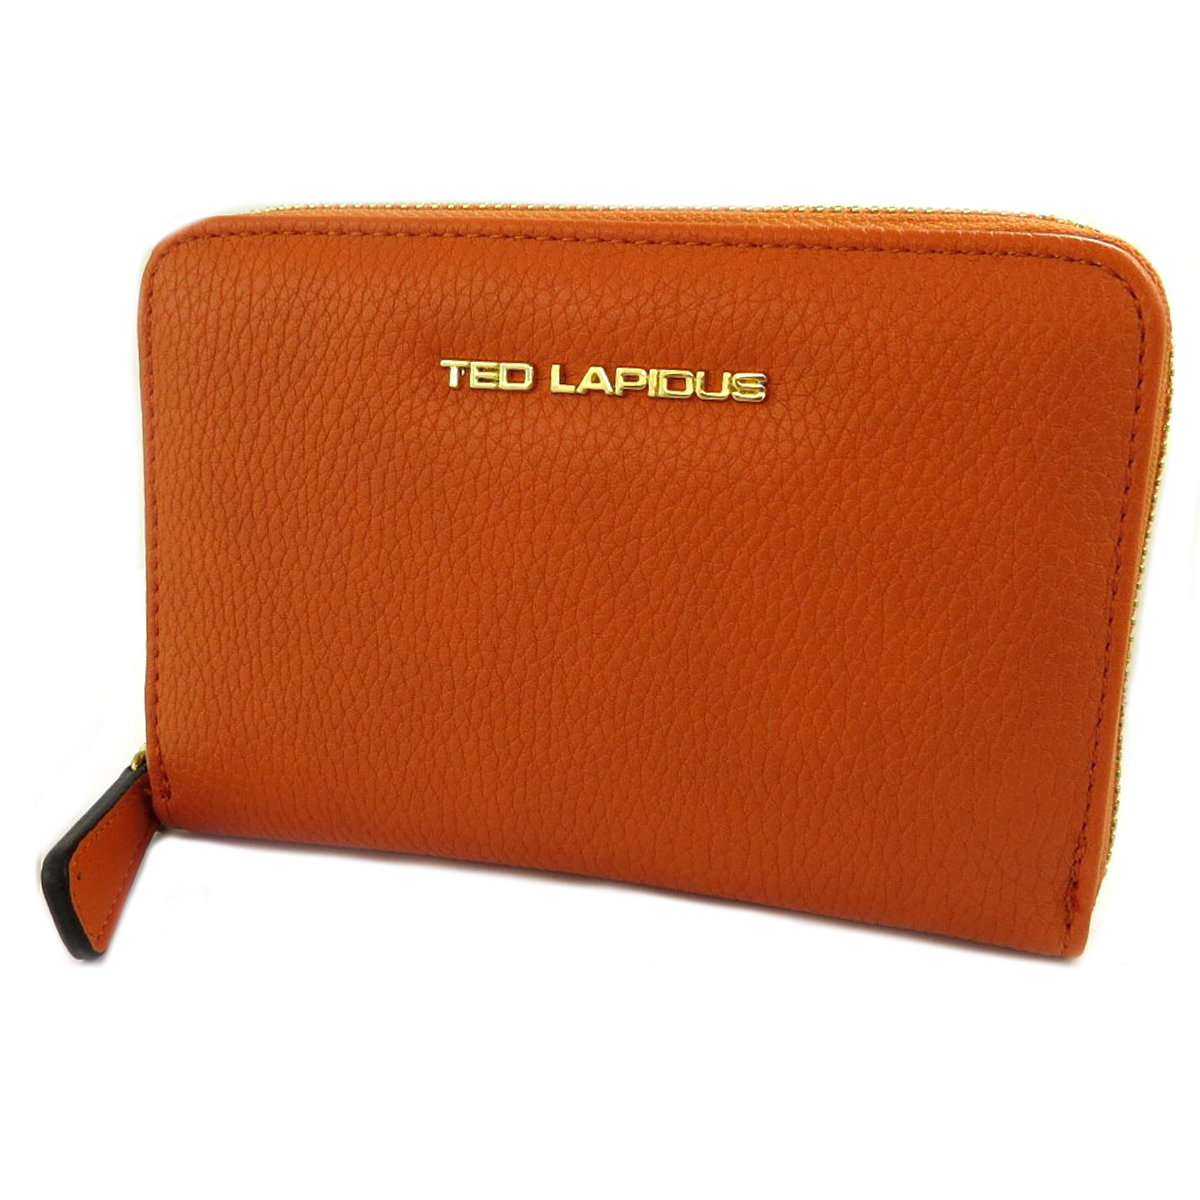 Portefeuille zippé \'Ted Lapidus\' orange - 155x105x25 - [Q2250]